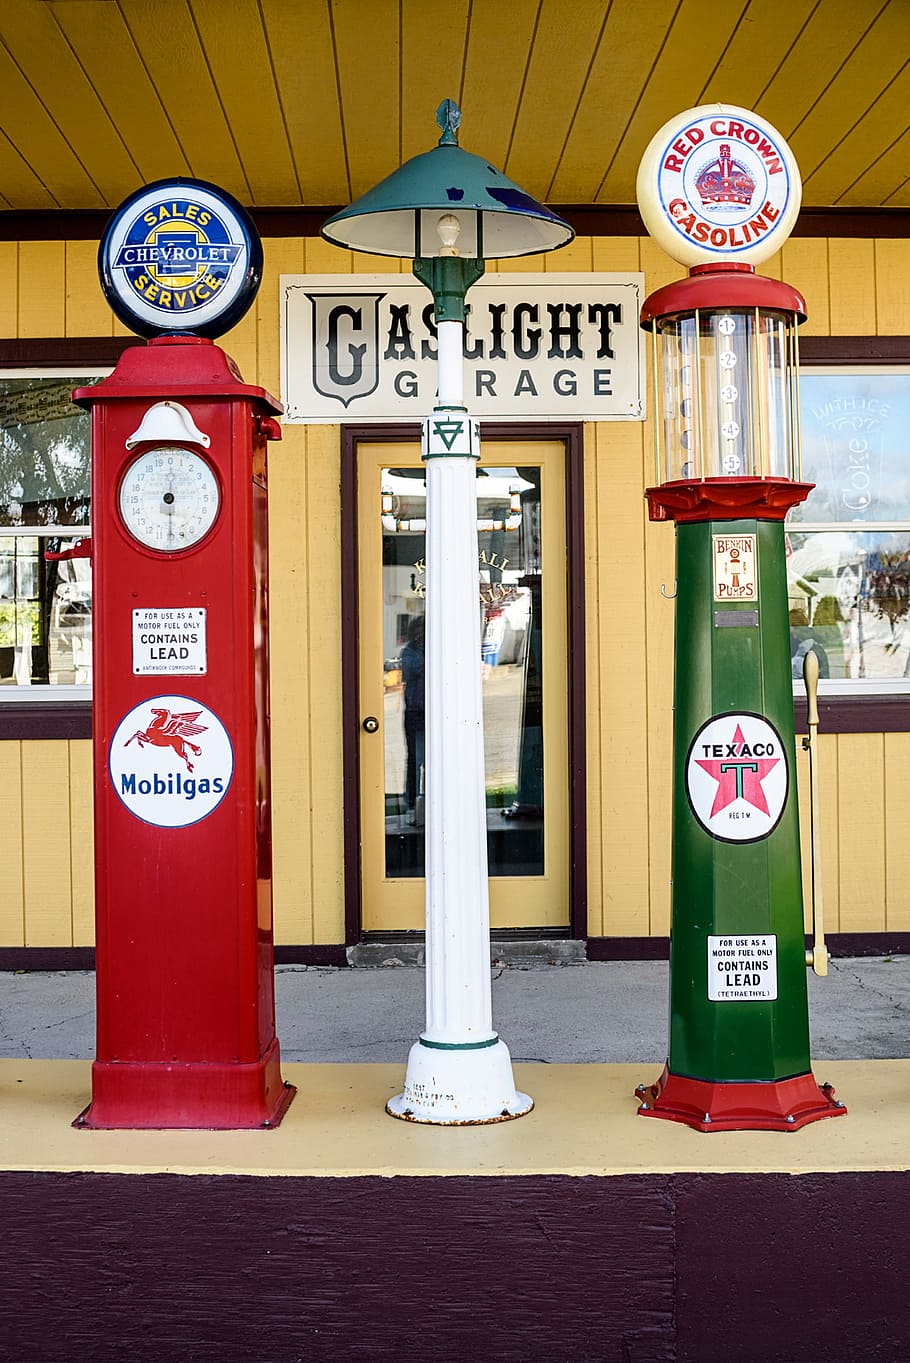 Vintage, Gas Pumps, Retro, Service, refueling, classic, station, antique, fuel, gasoline